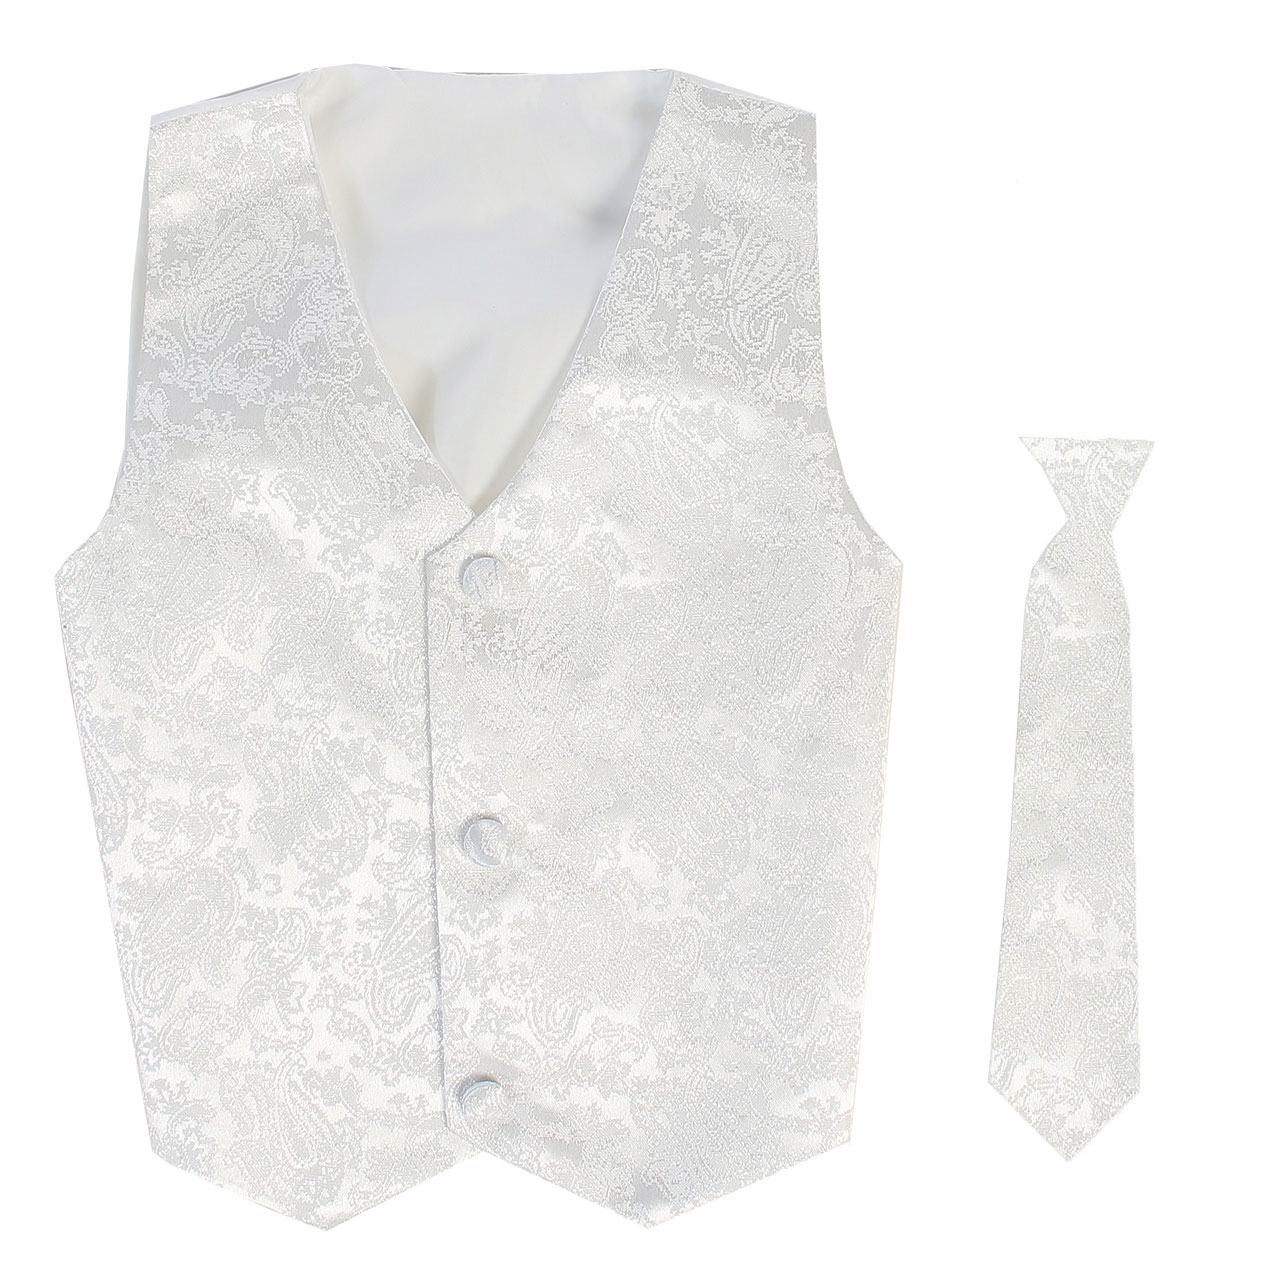 Vest and Clip On Boy Necktie set - White Paisley - L/XL